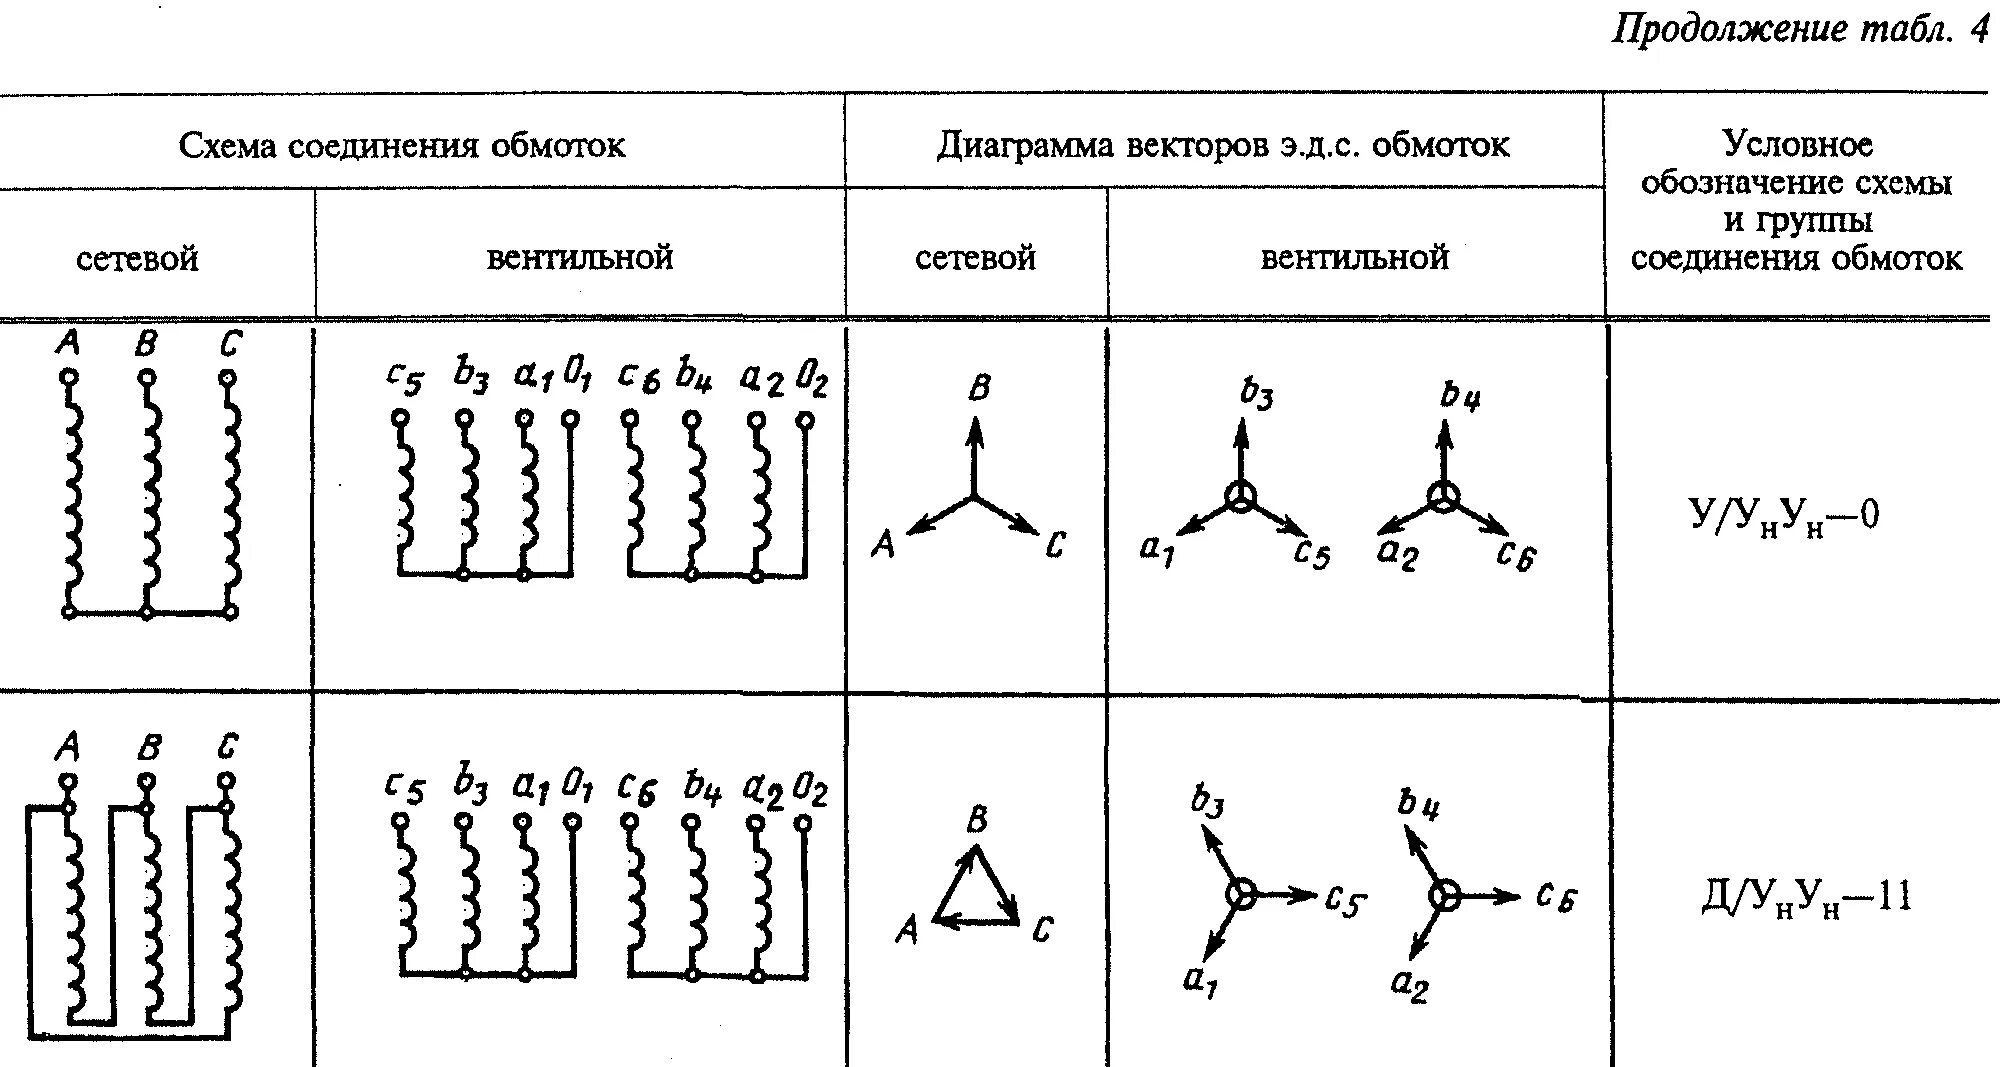 Схема соединения обмоток трансформатора 1/1-0. 1/1-0 Группа соединения. Обозначения схемы соединения обмоток. Схема соединения обмоток трансформатора у/Zн-11.